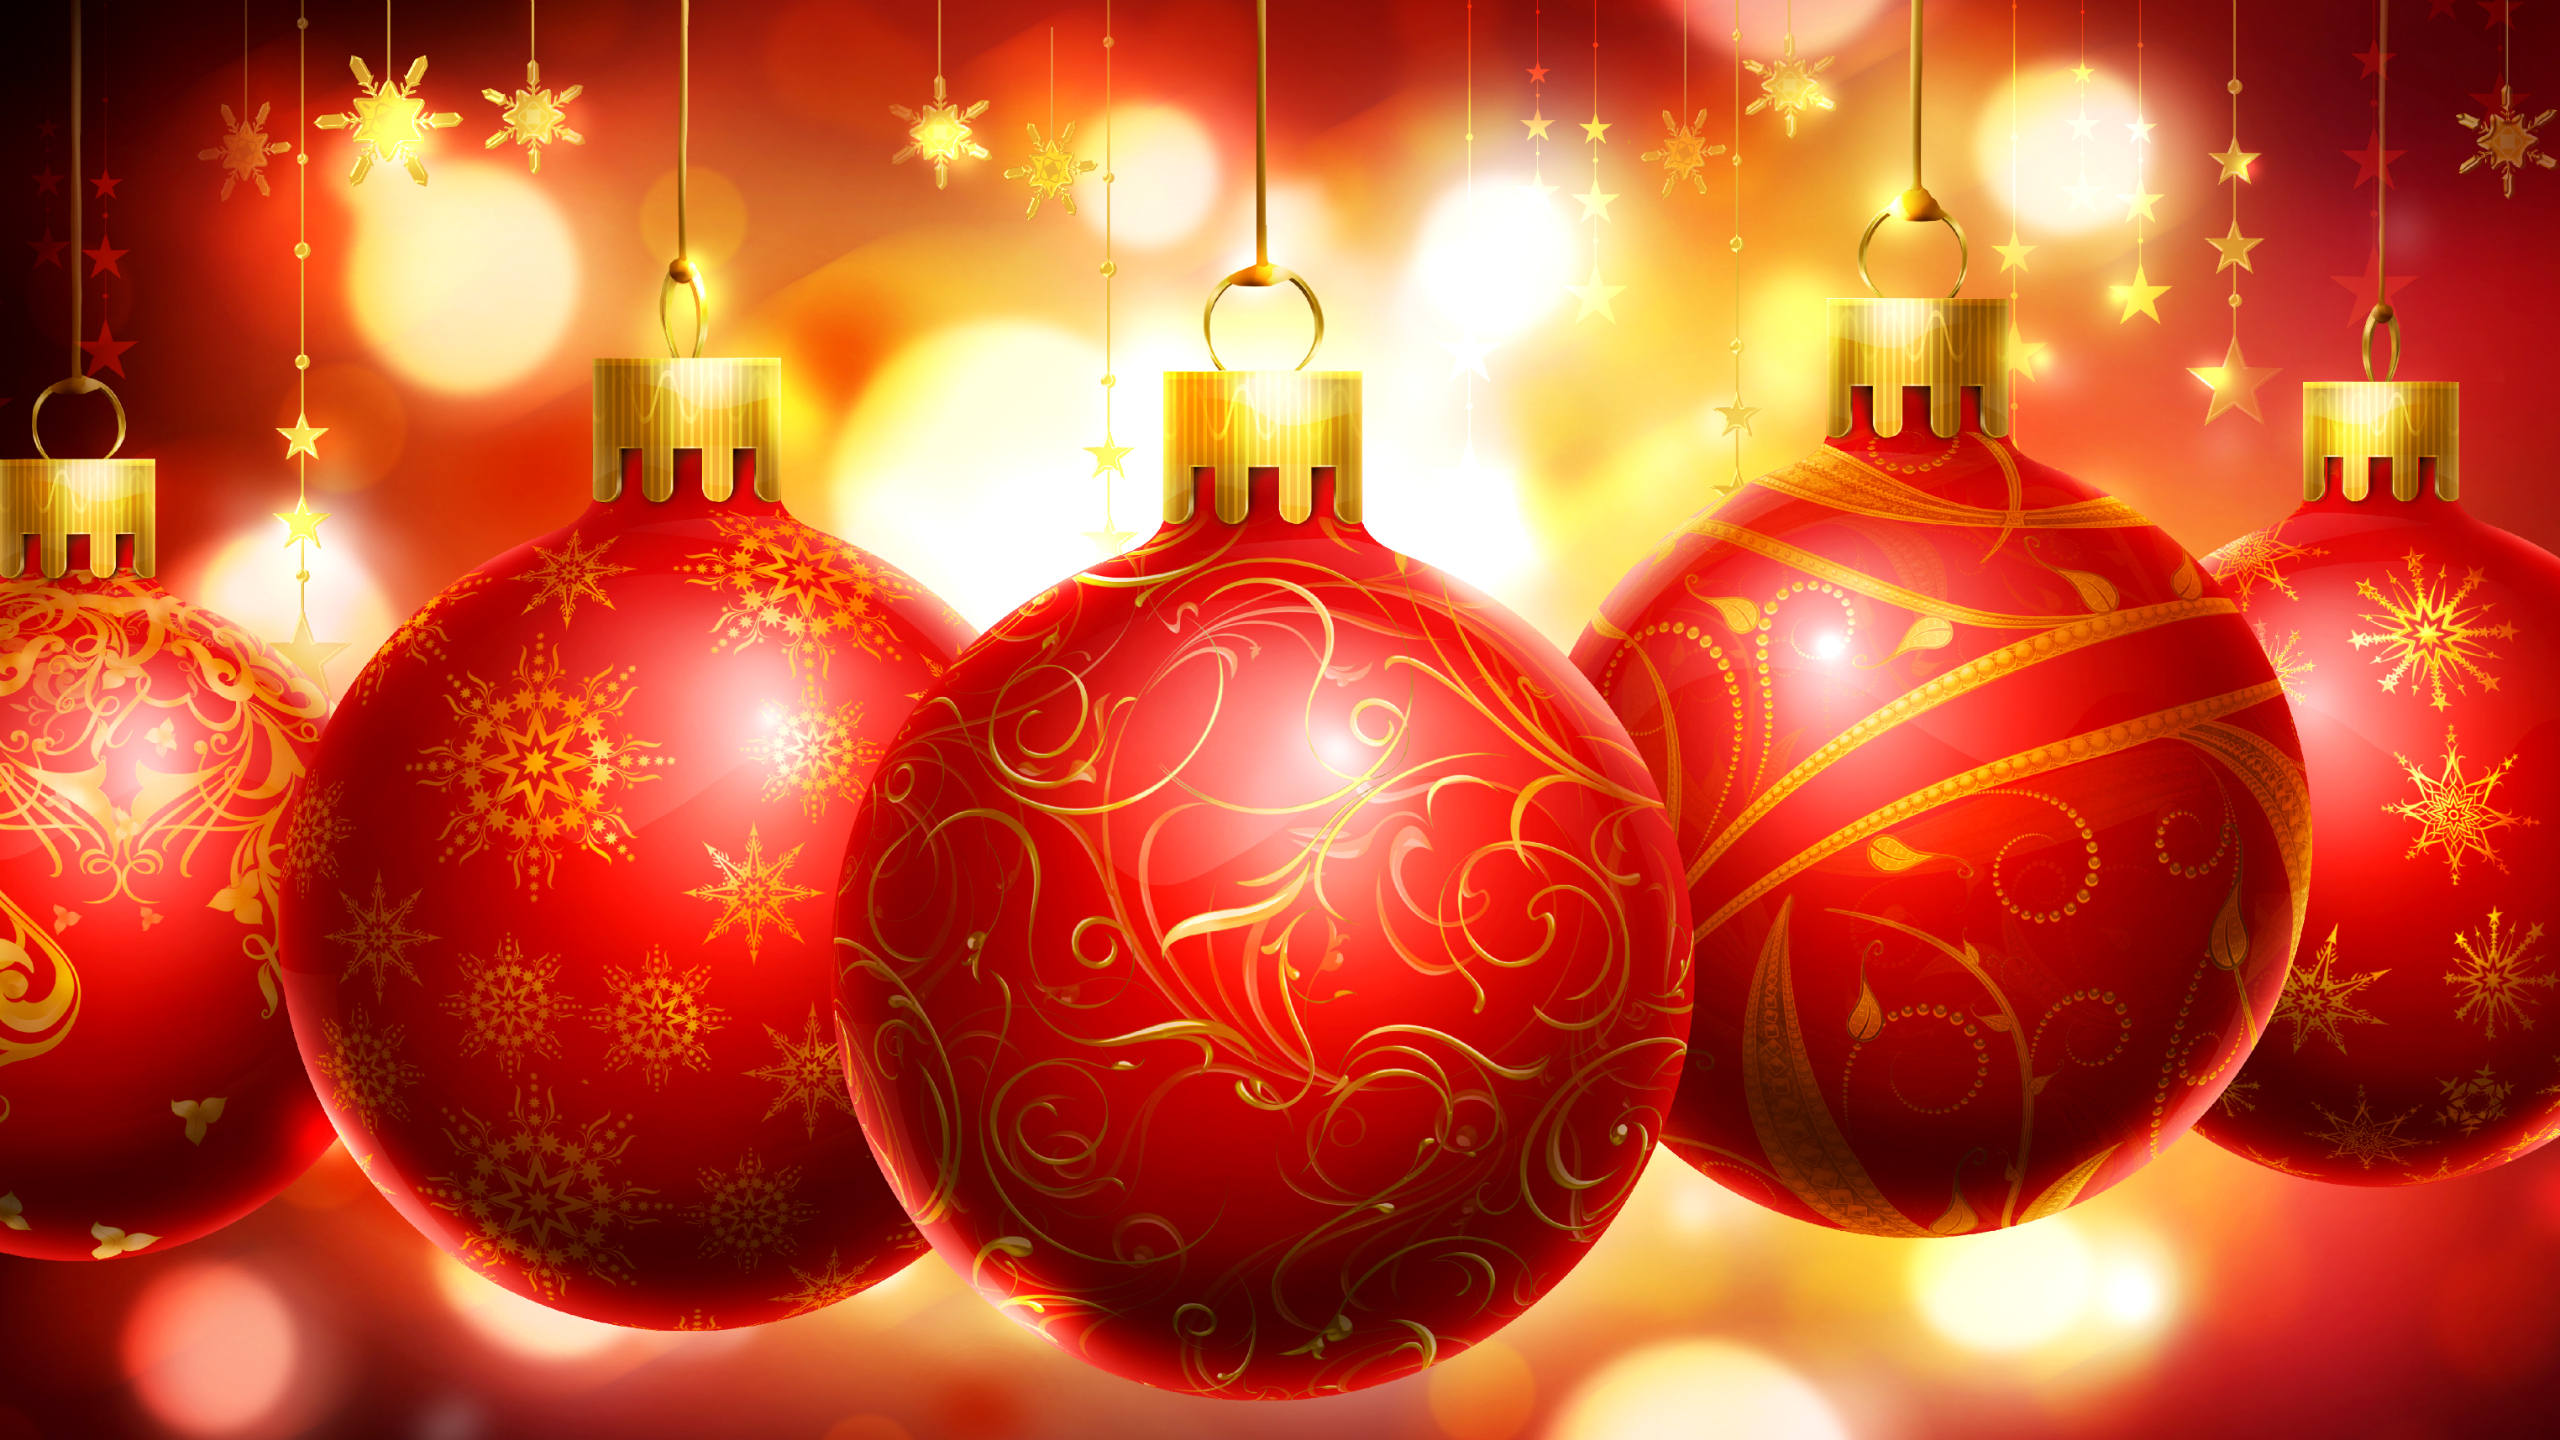 decoraciones de navidad fondos de pantalla,decoración navideña,decoración navideña,rojo,navidad,ornamento